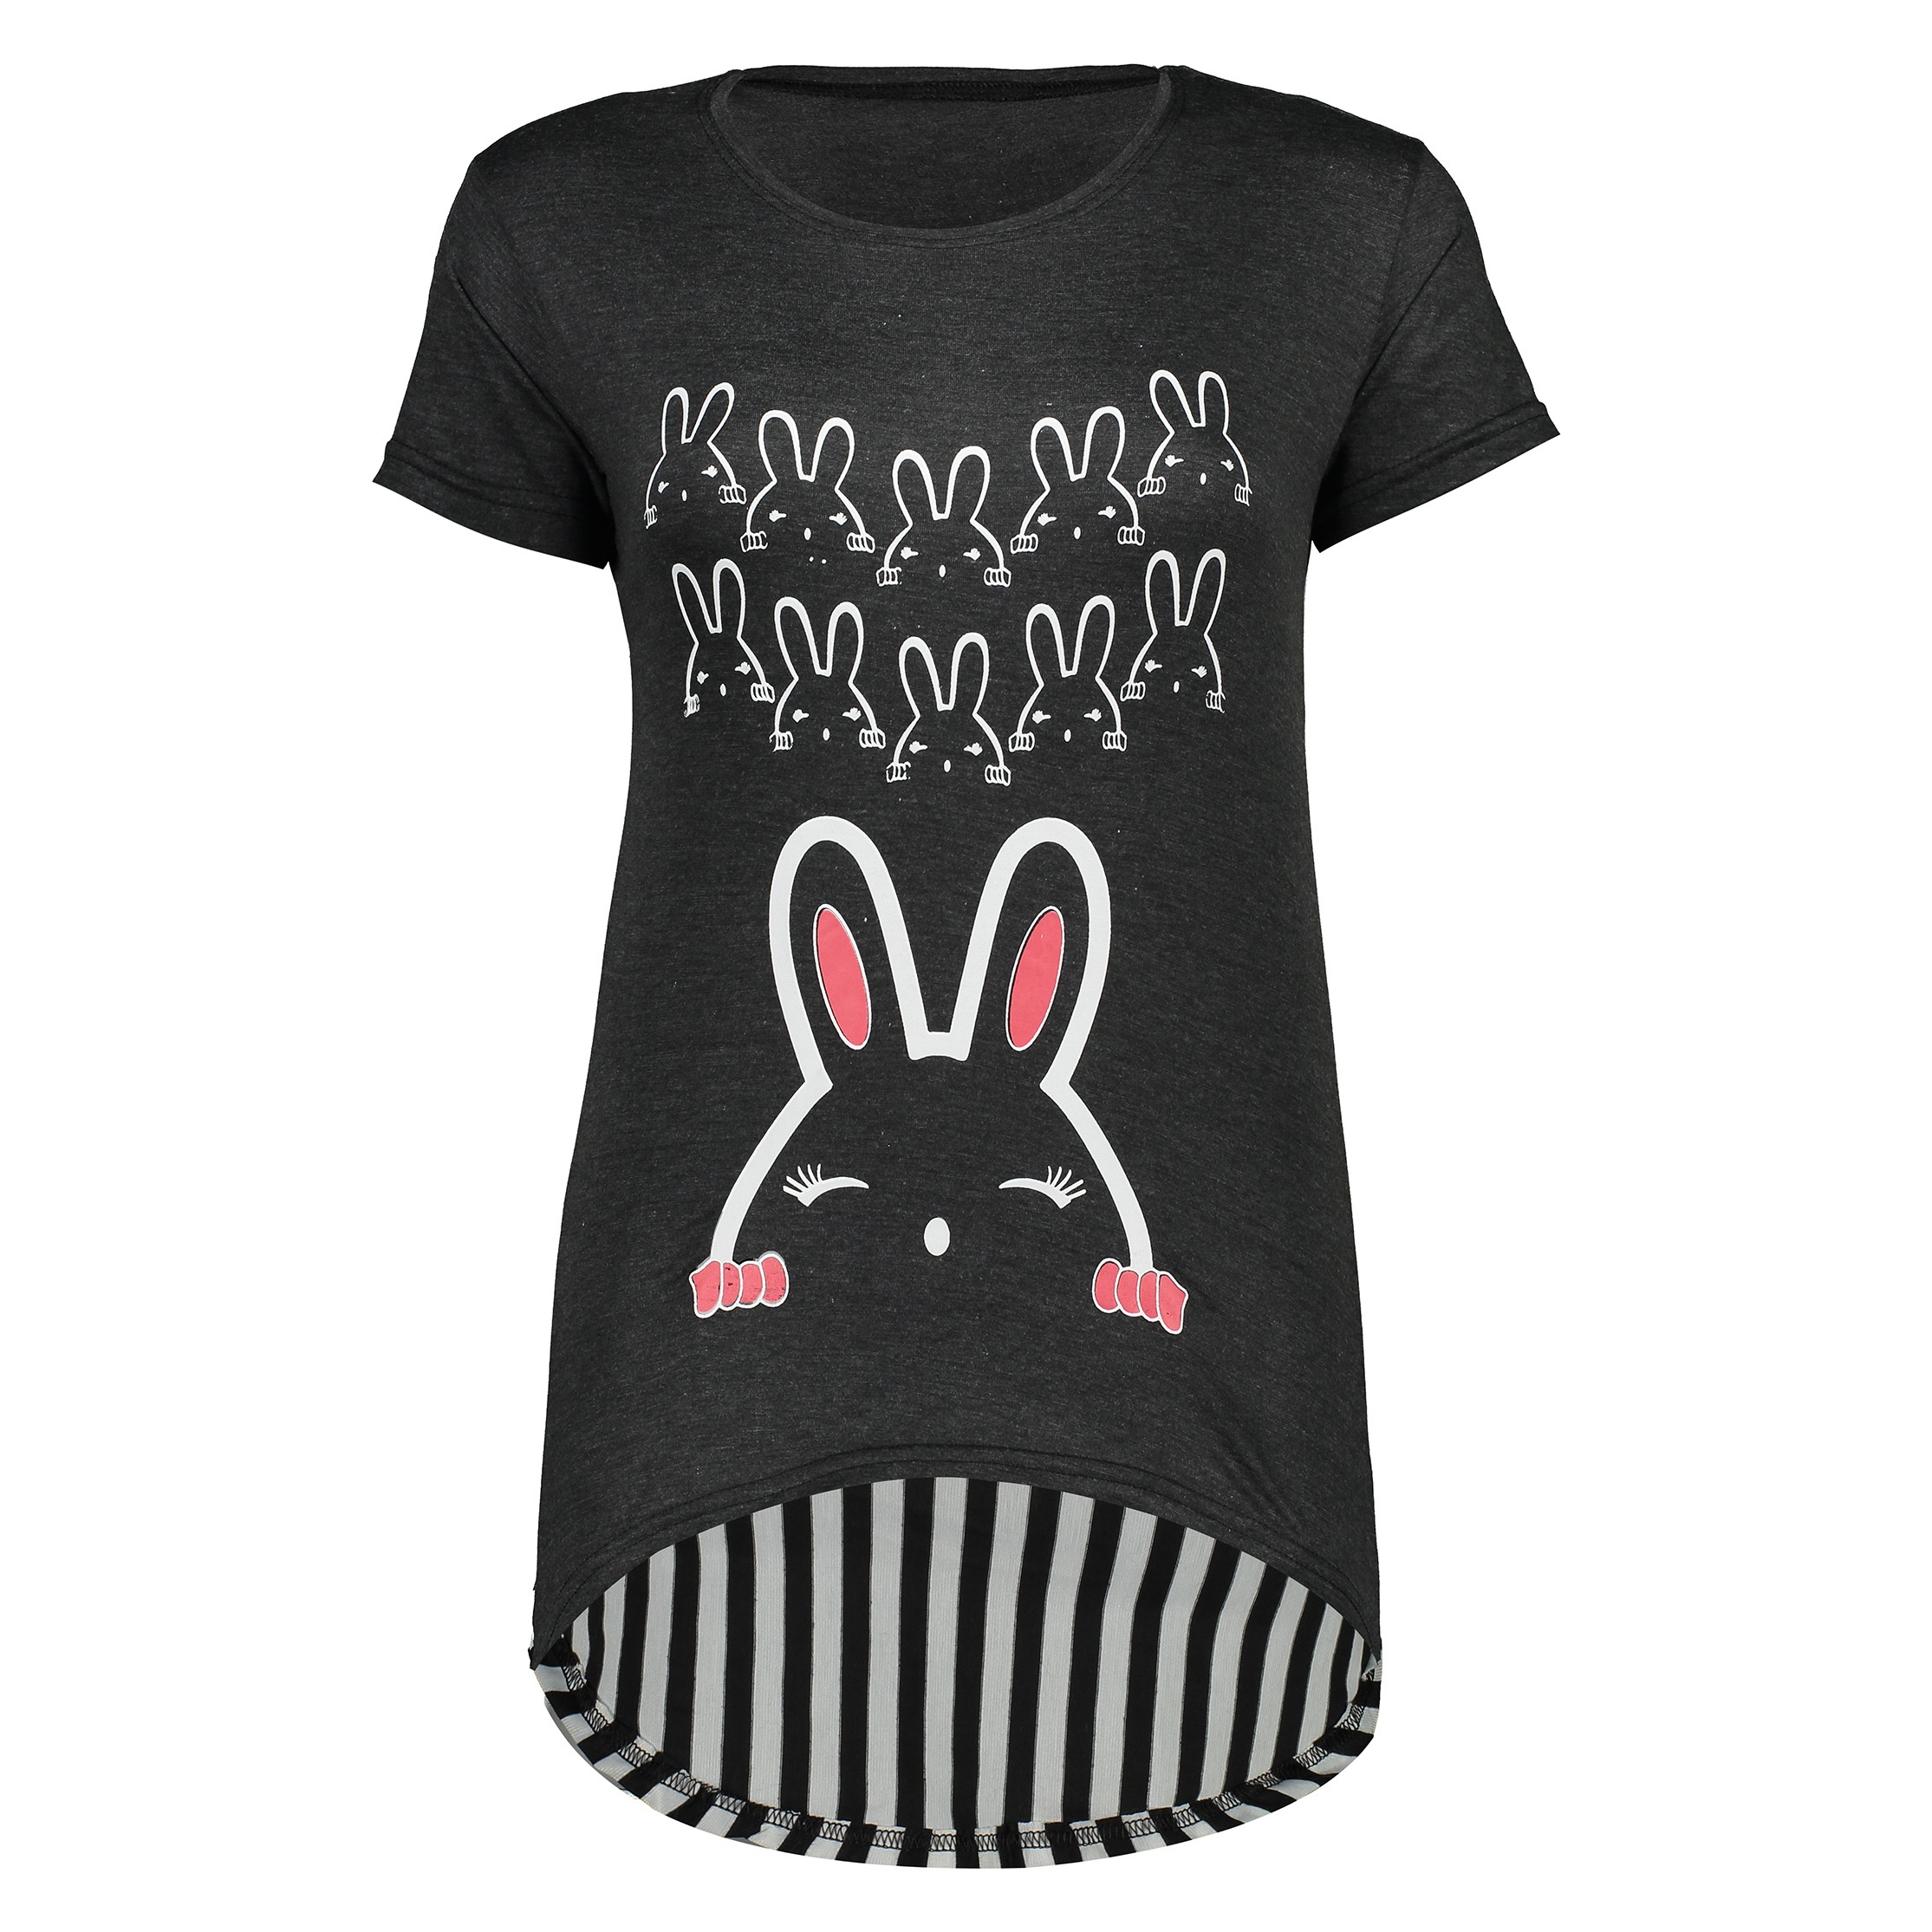 تی شرت زنانه طرح خرگوش کد R120